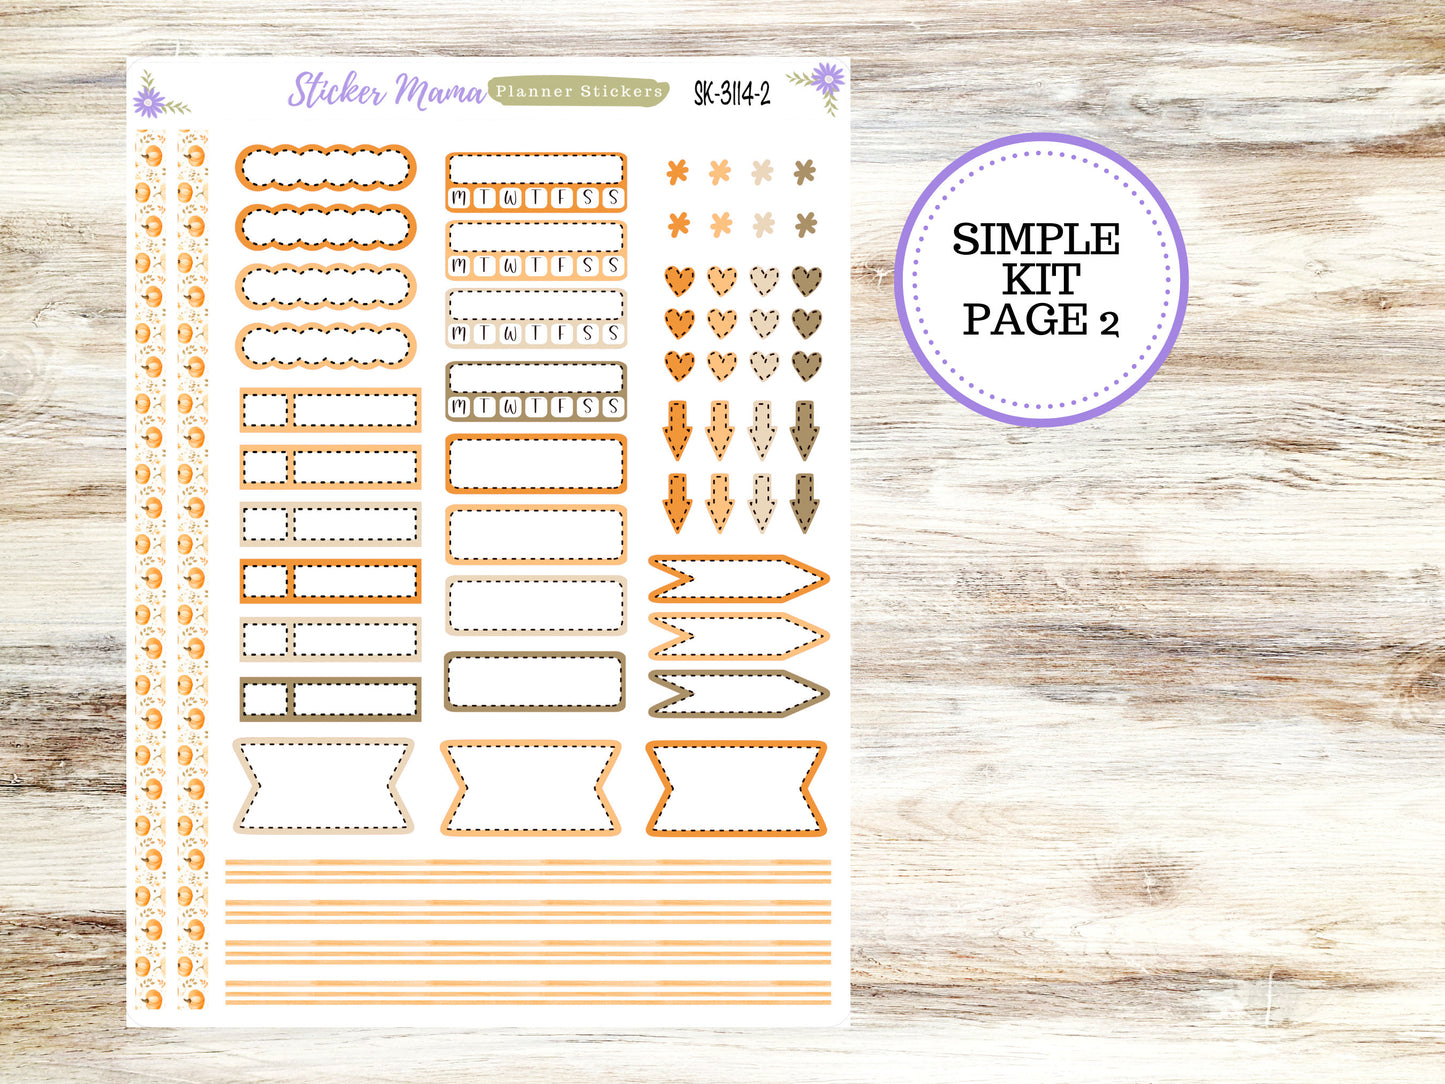 SIMPLE KIT  || #3114 ||   Pumpkin Paradise || Any Kind Planner || Planner Stickers || Planner Stickers